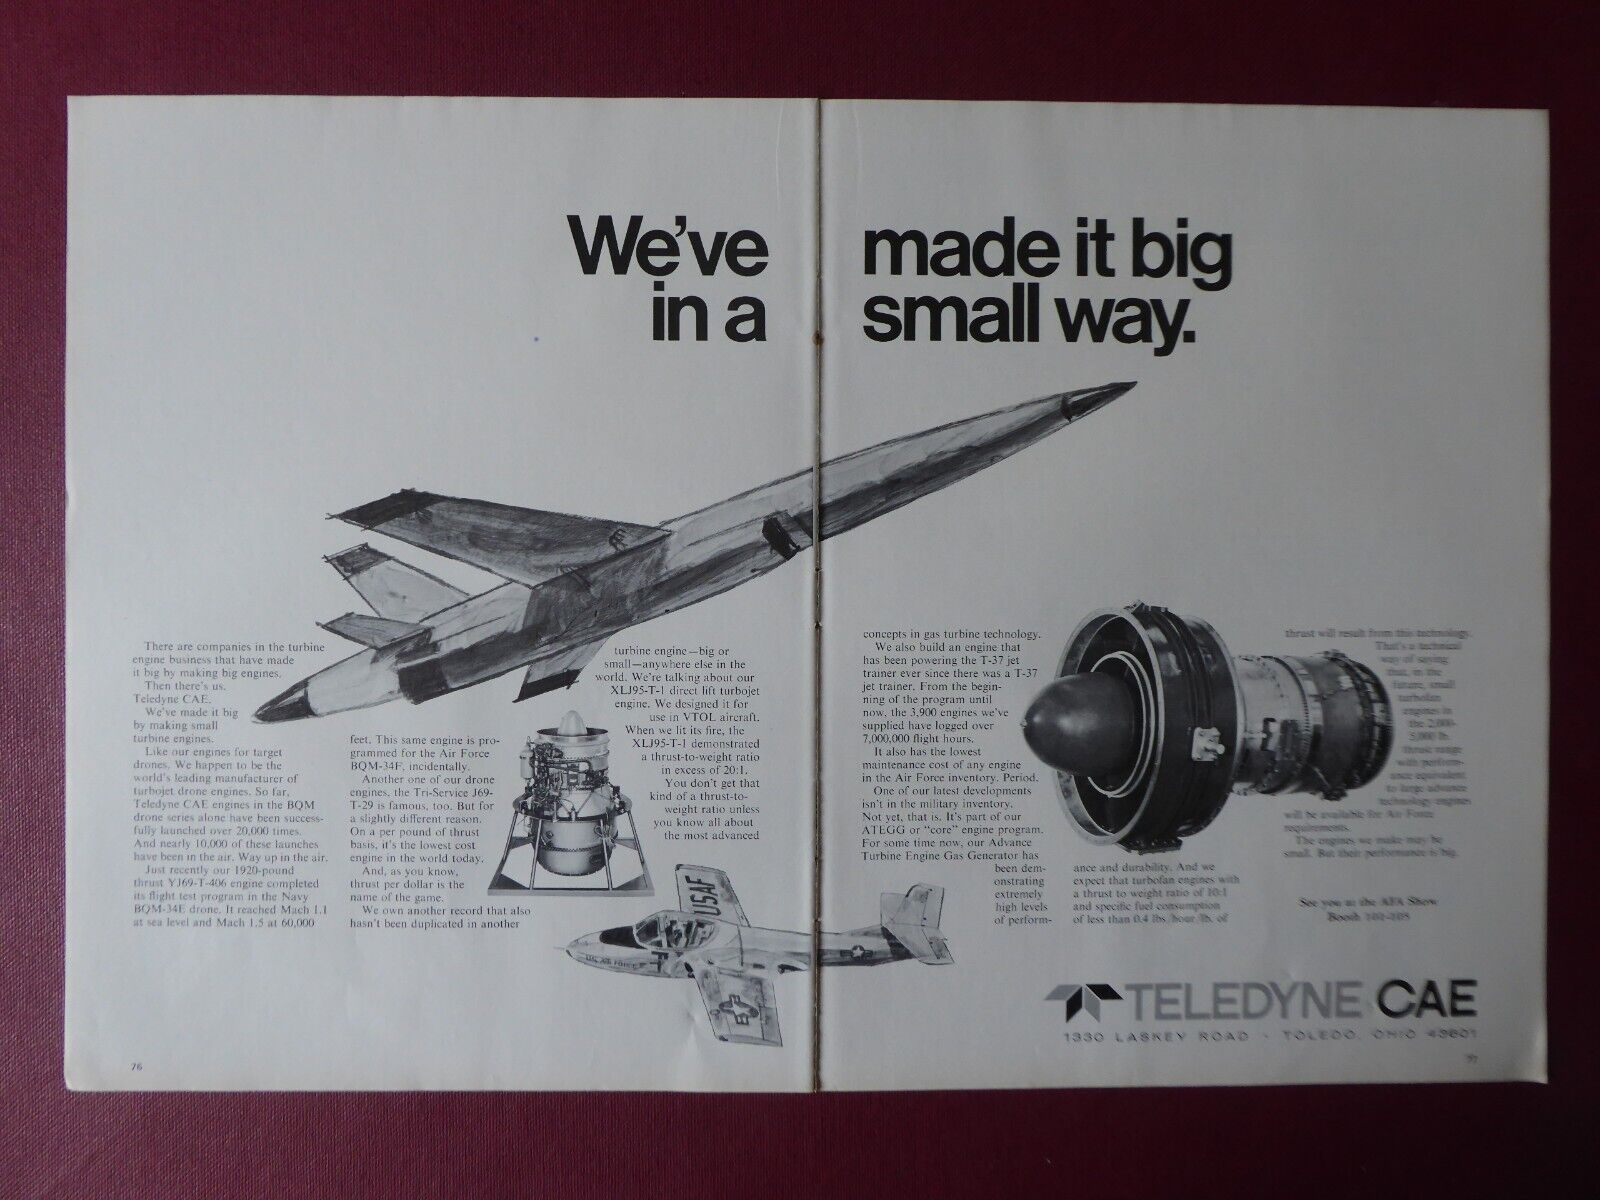 9/1970 PUB TELEDYNE CAE TURBINE ENGINES RPV MISSILE TARGET DRONE T37 ORIGINAL AD